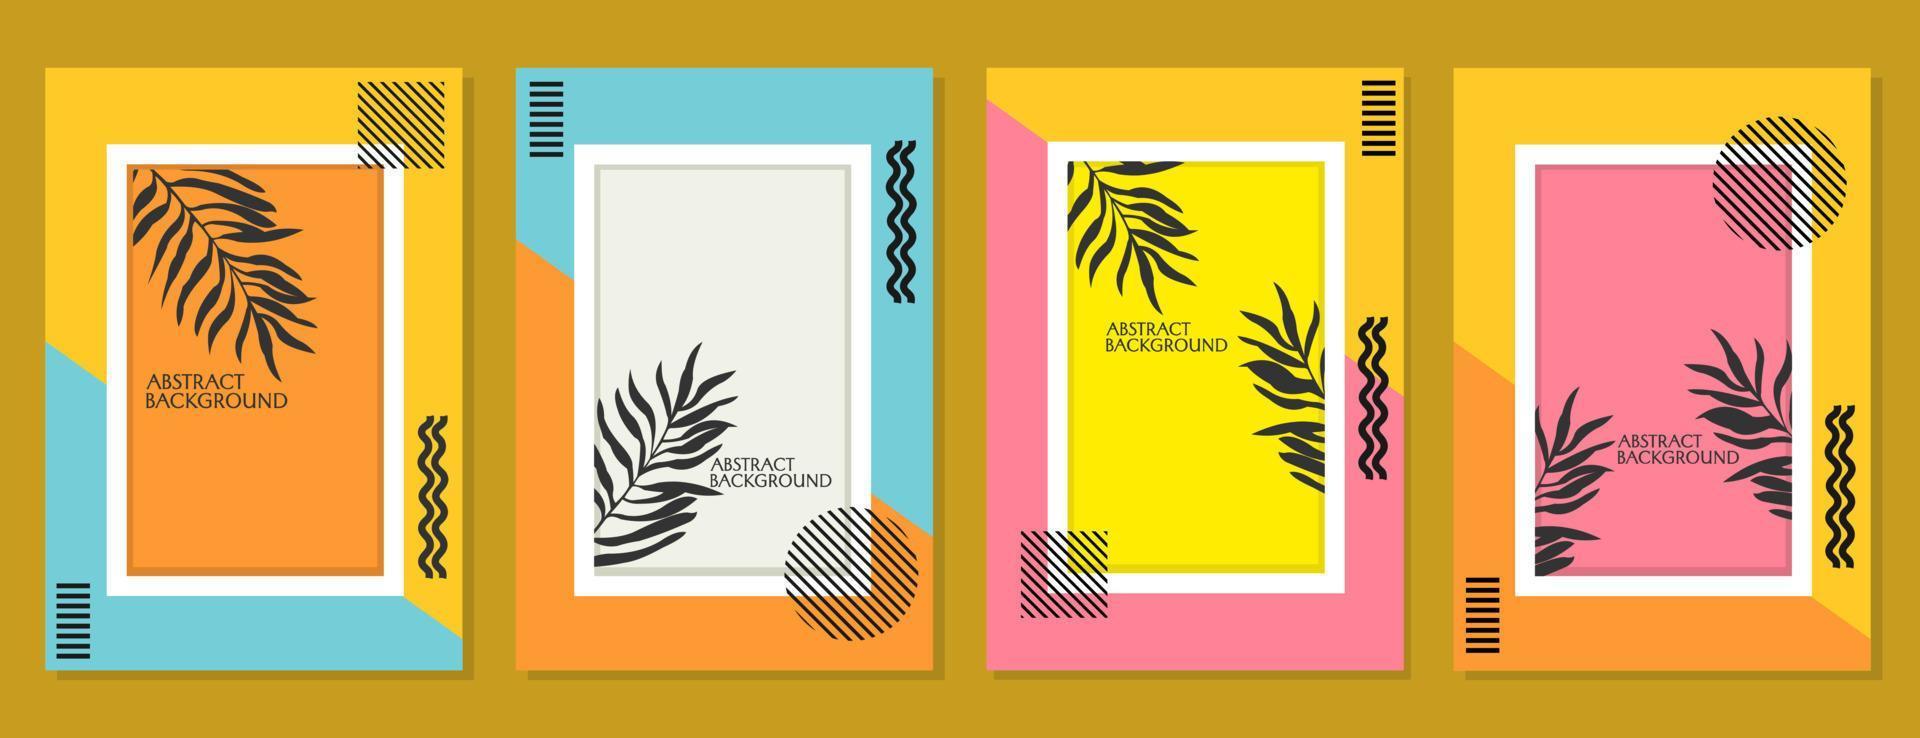 conjunto de diseños de portada enmarcados con elementos de silueta de hoja de palma. diseño de fondo estético de color pastel vector